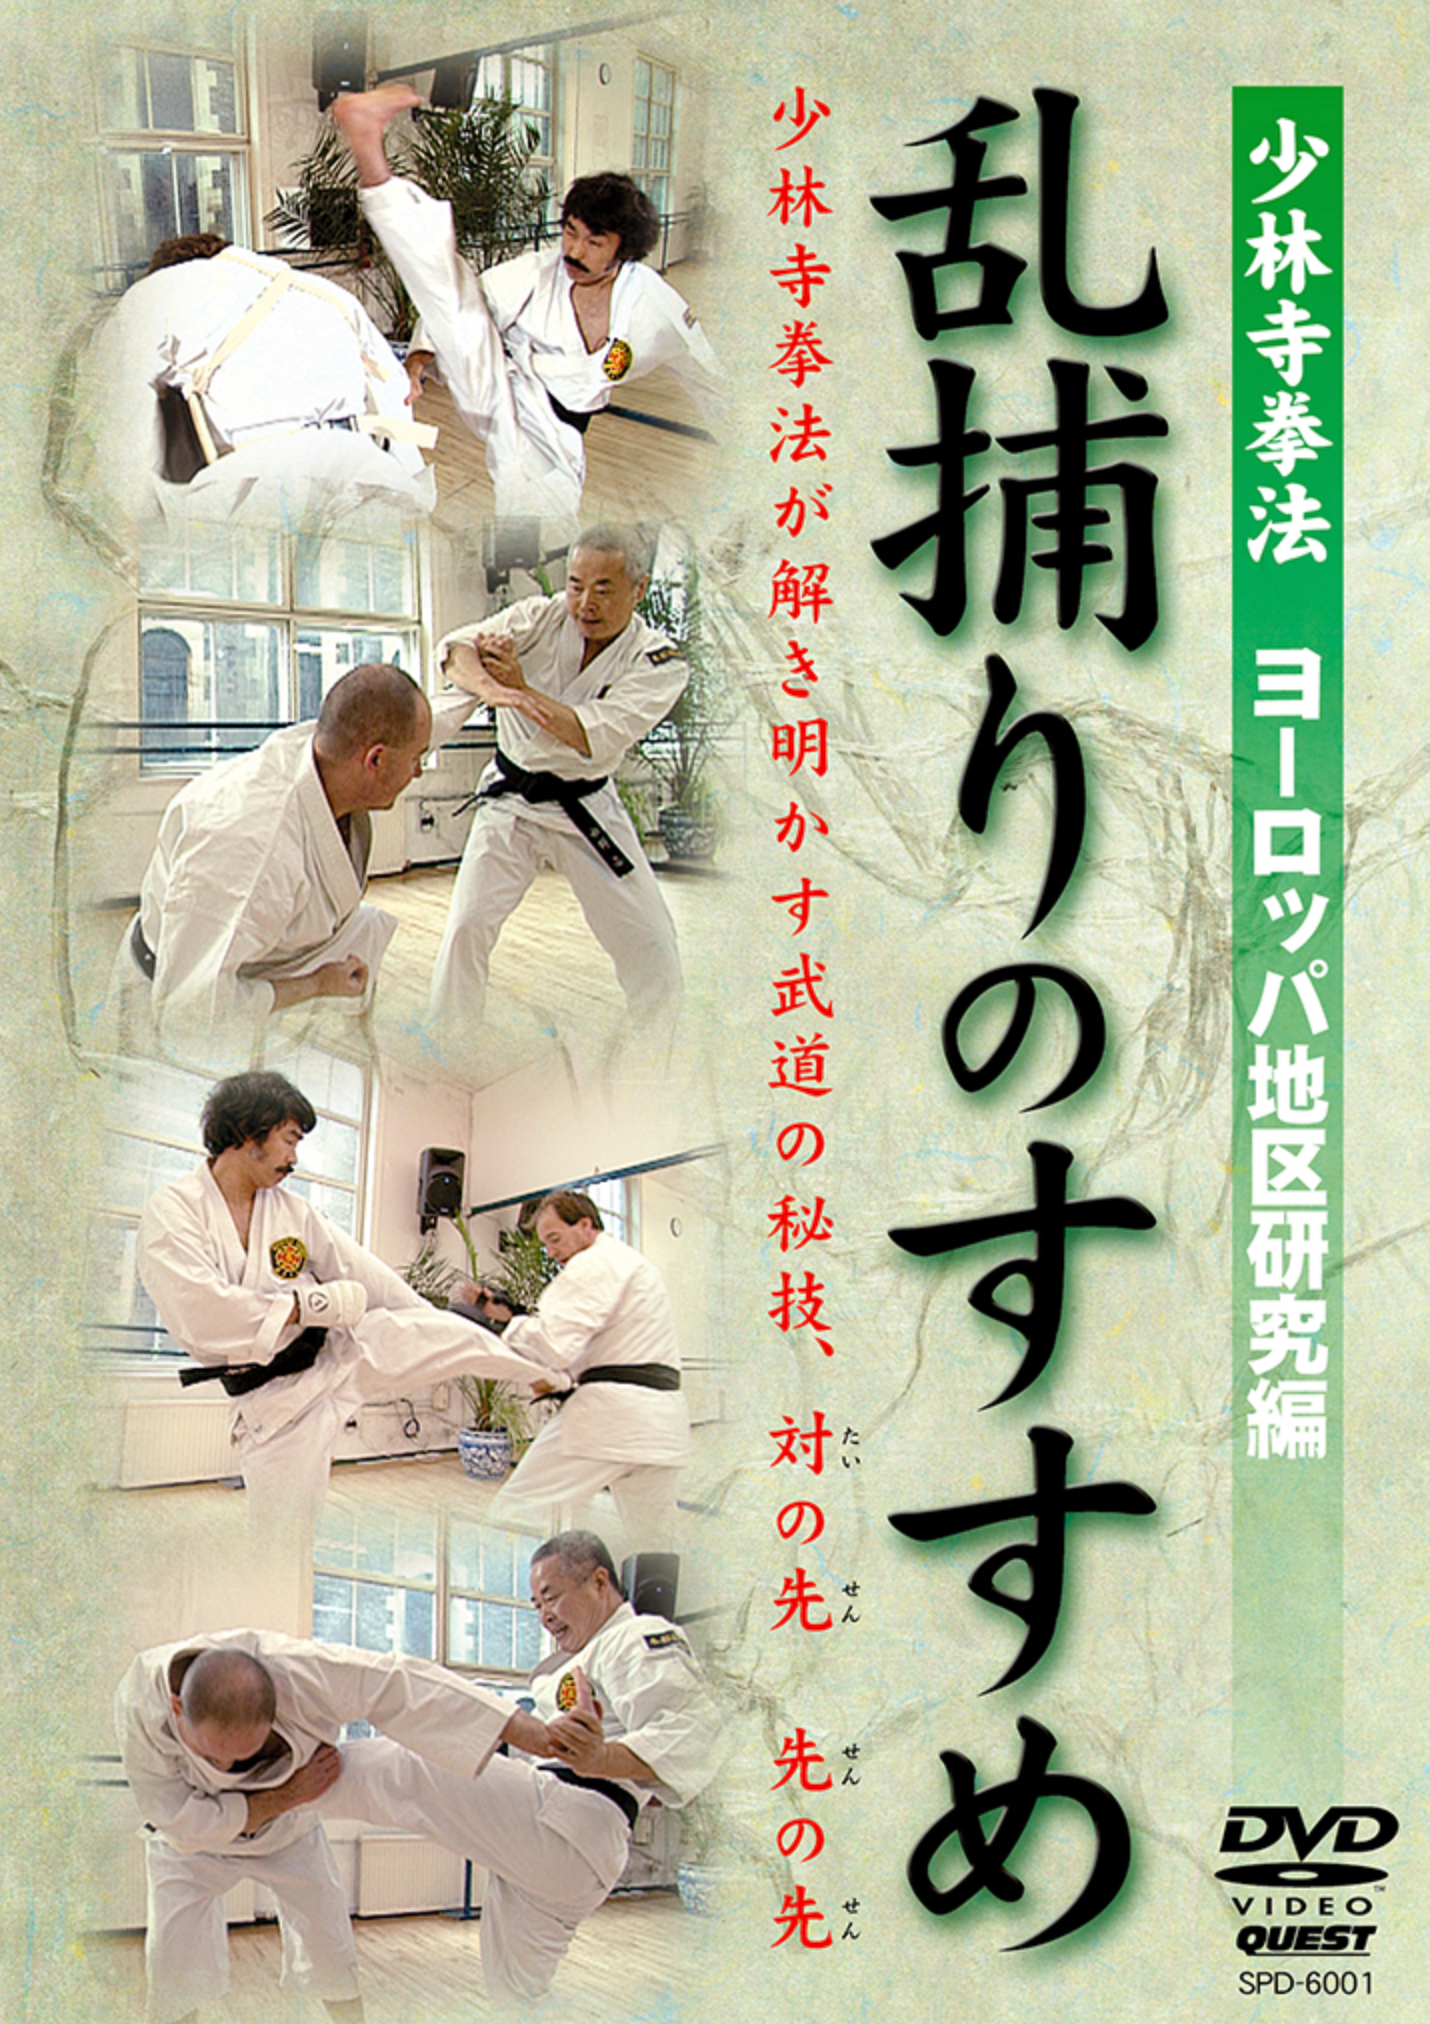 Shorinji Kempo: Randori no Susume DVD - Budovideos Inc